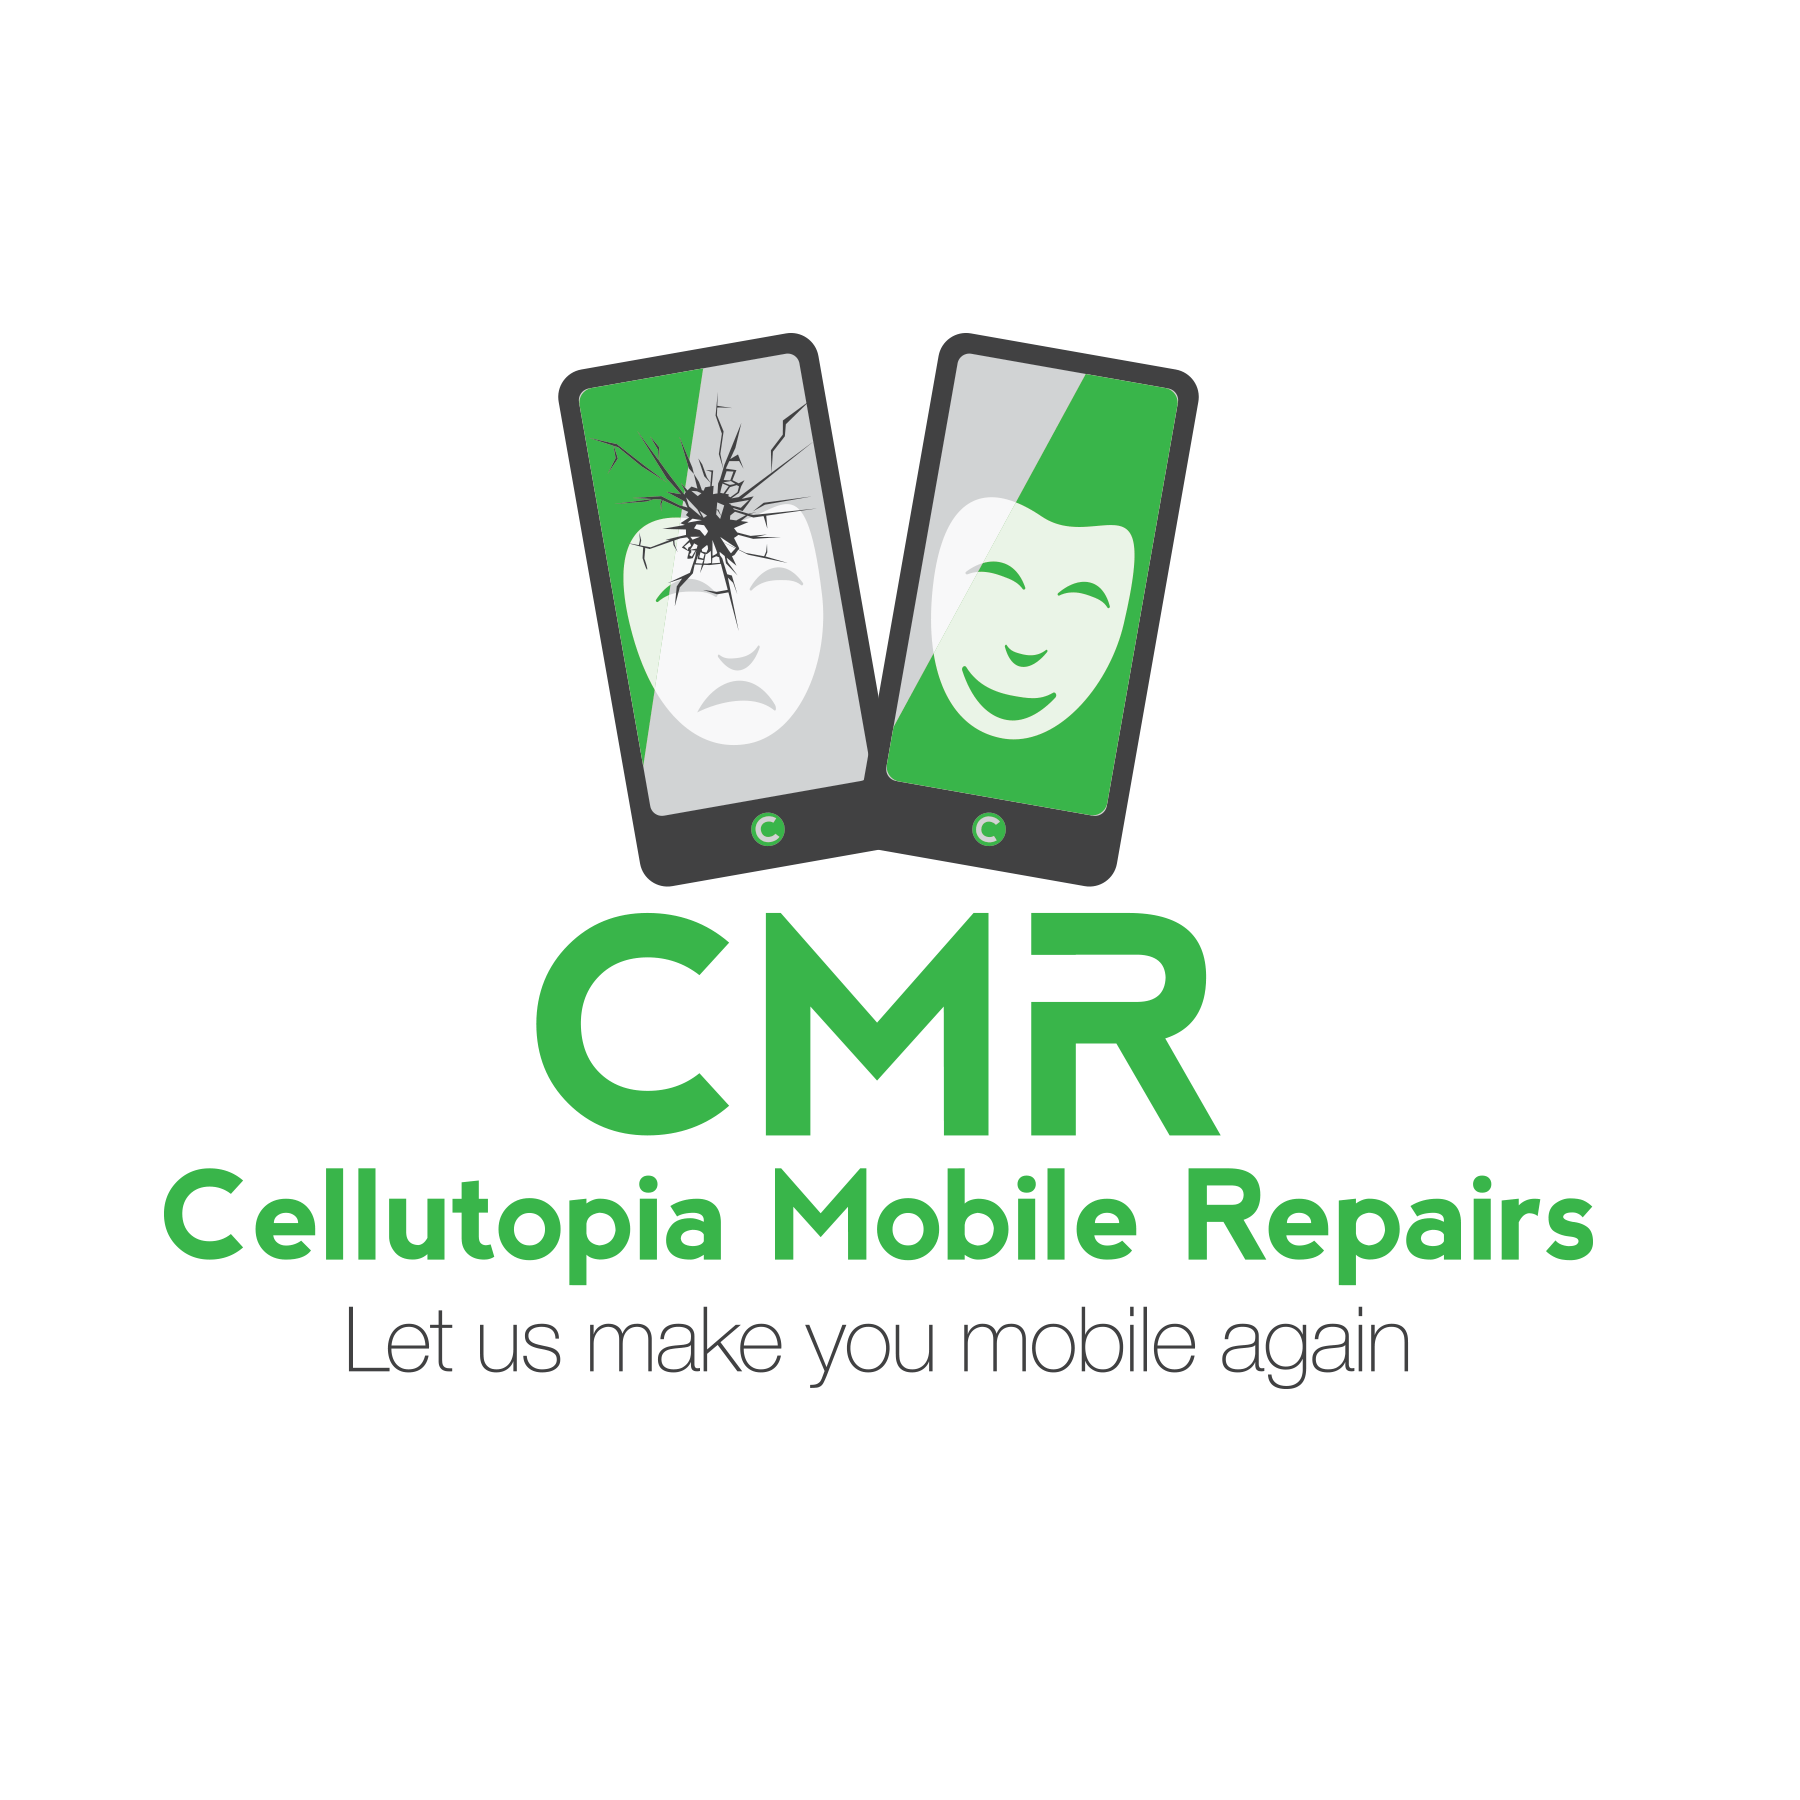 Cellutopia Mobile Repairs